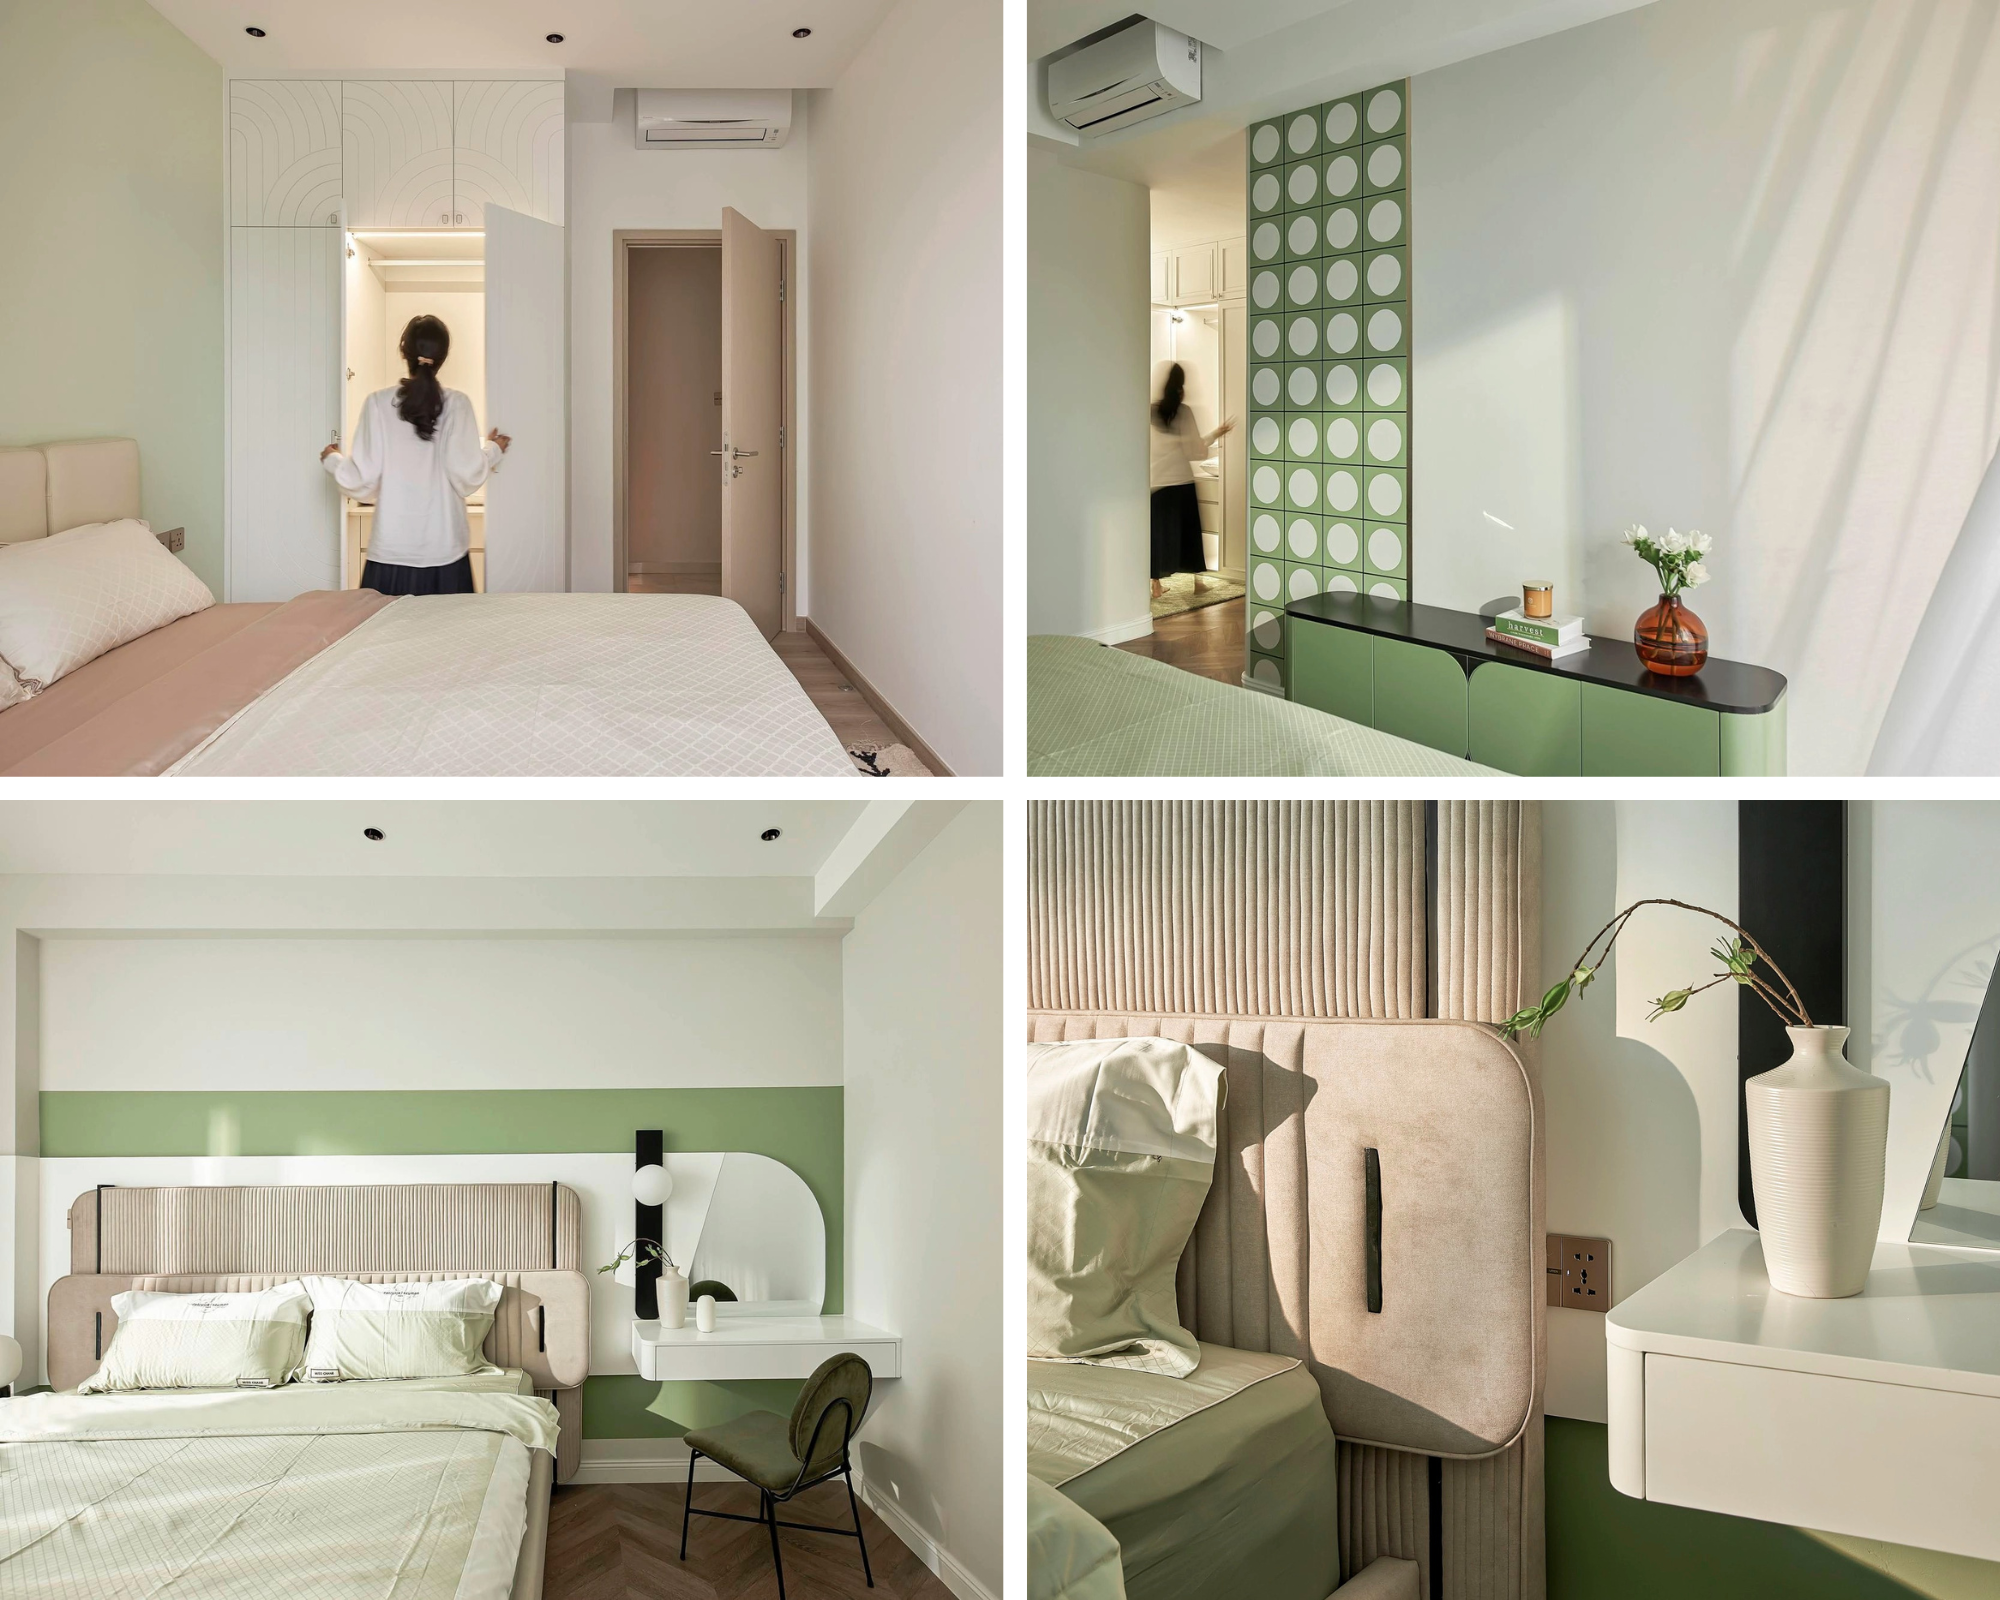 Căn hộ 2 phòng ngủ với không gian mở ở TP.HCM điểm xuyết gam màu xanh lá khơi gợi nhiều xúc cảm - Ảnh 7.